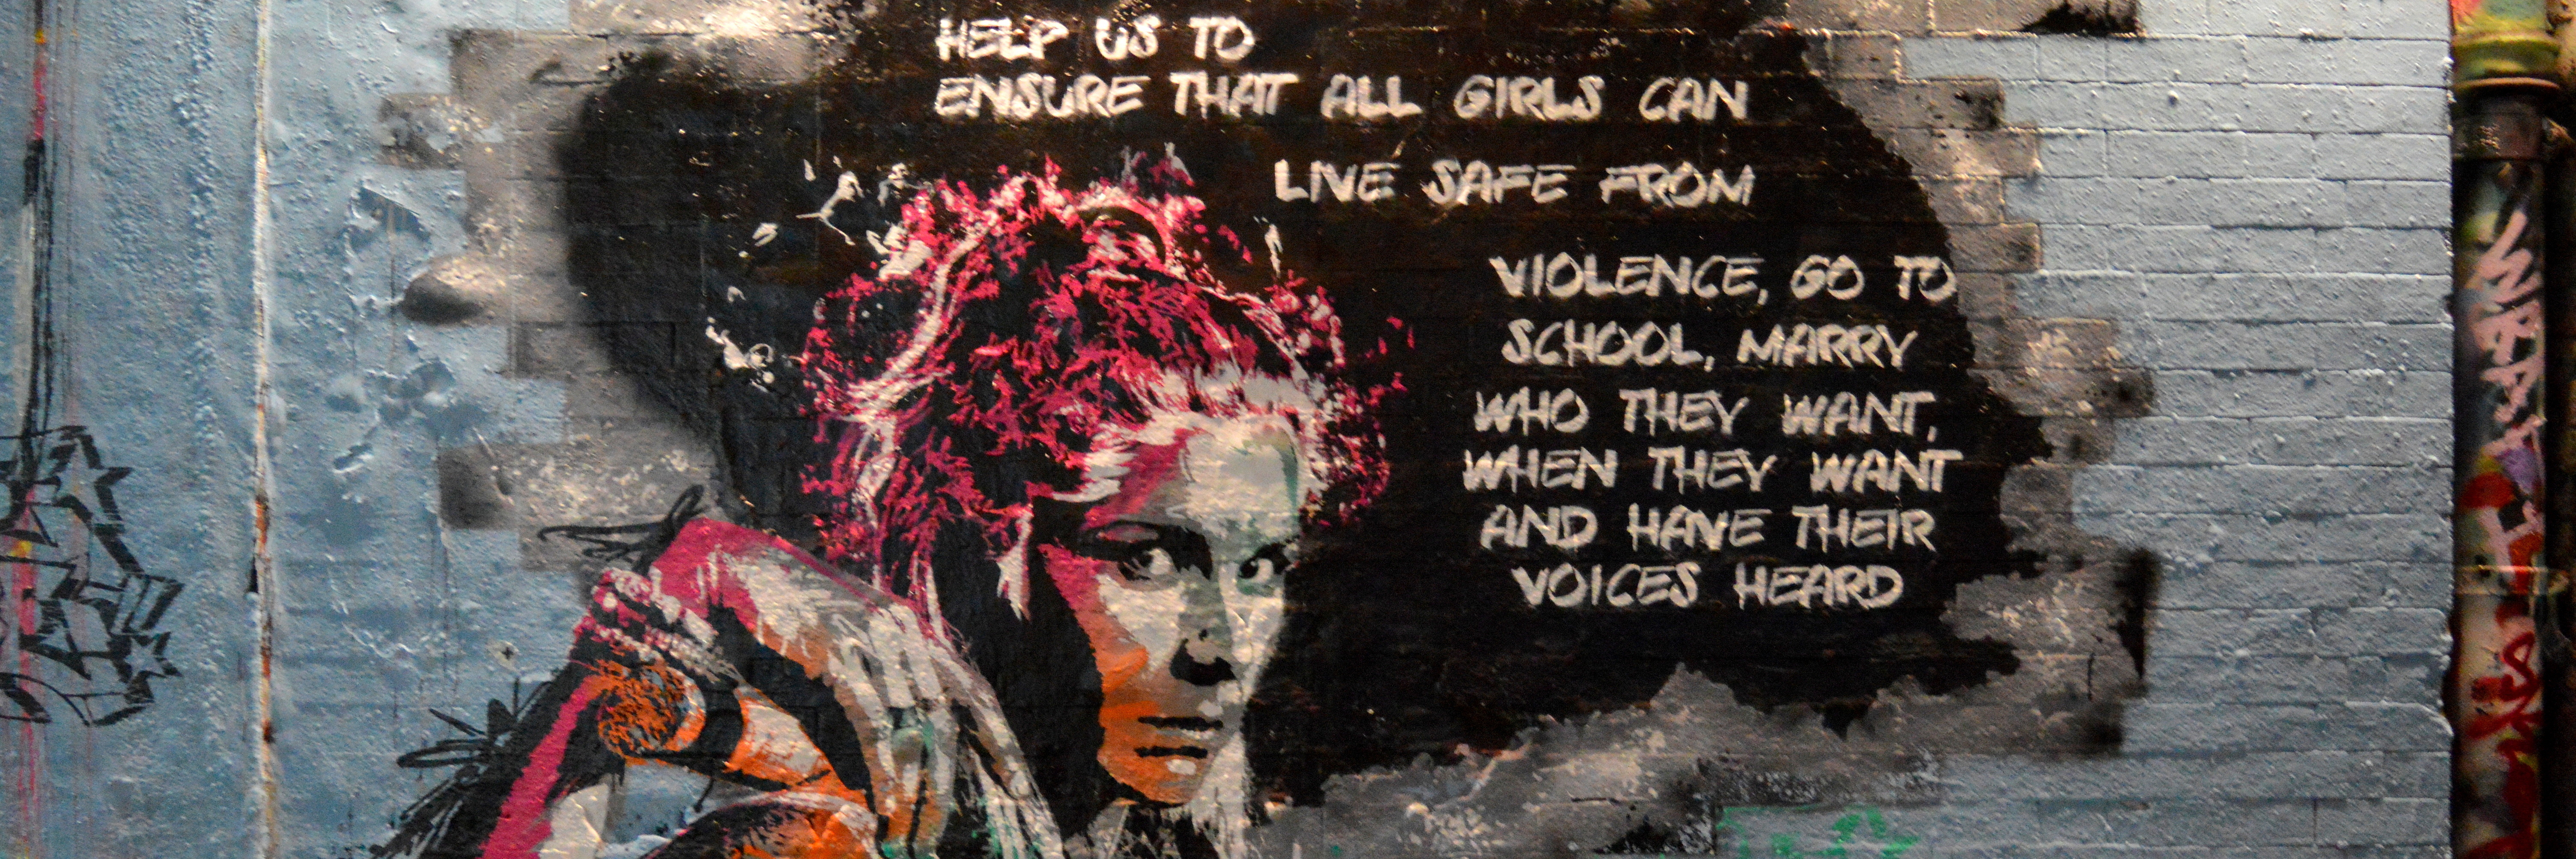 Foto: Graffititi, das eine Frau mit Blick auf Betrachter_in zeigt  